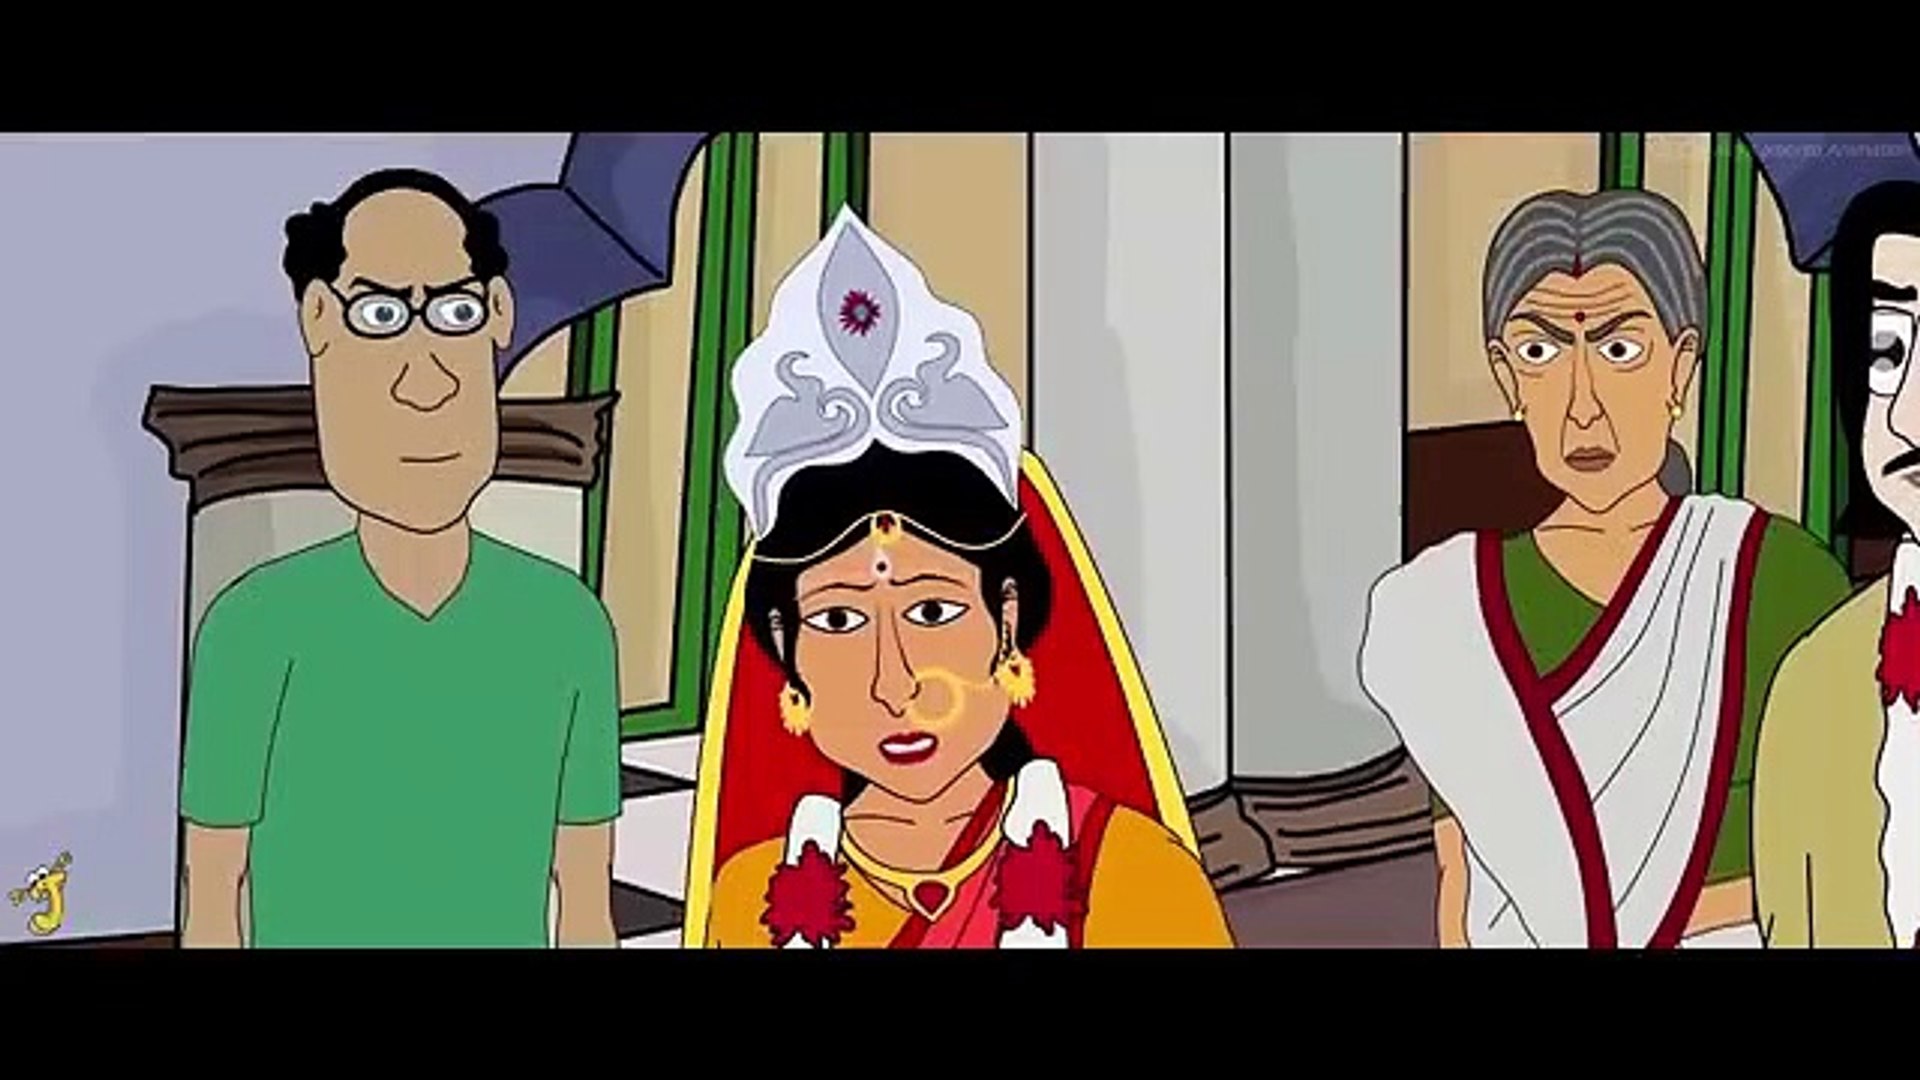 Adharer_Chorakuthuri_-_Bhuter_Golpo___Horror_Story___Bangla_Animation___Haunted_House___Scary___JAS(360p)  - video Dailymotion